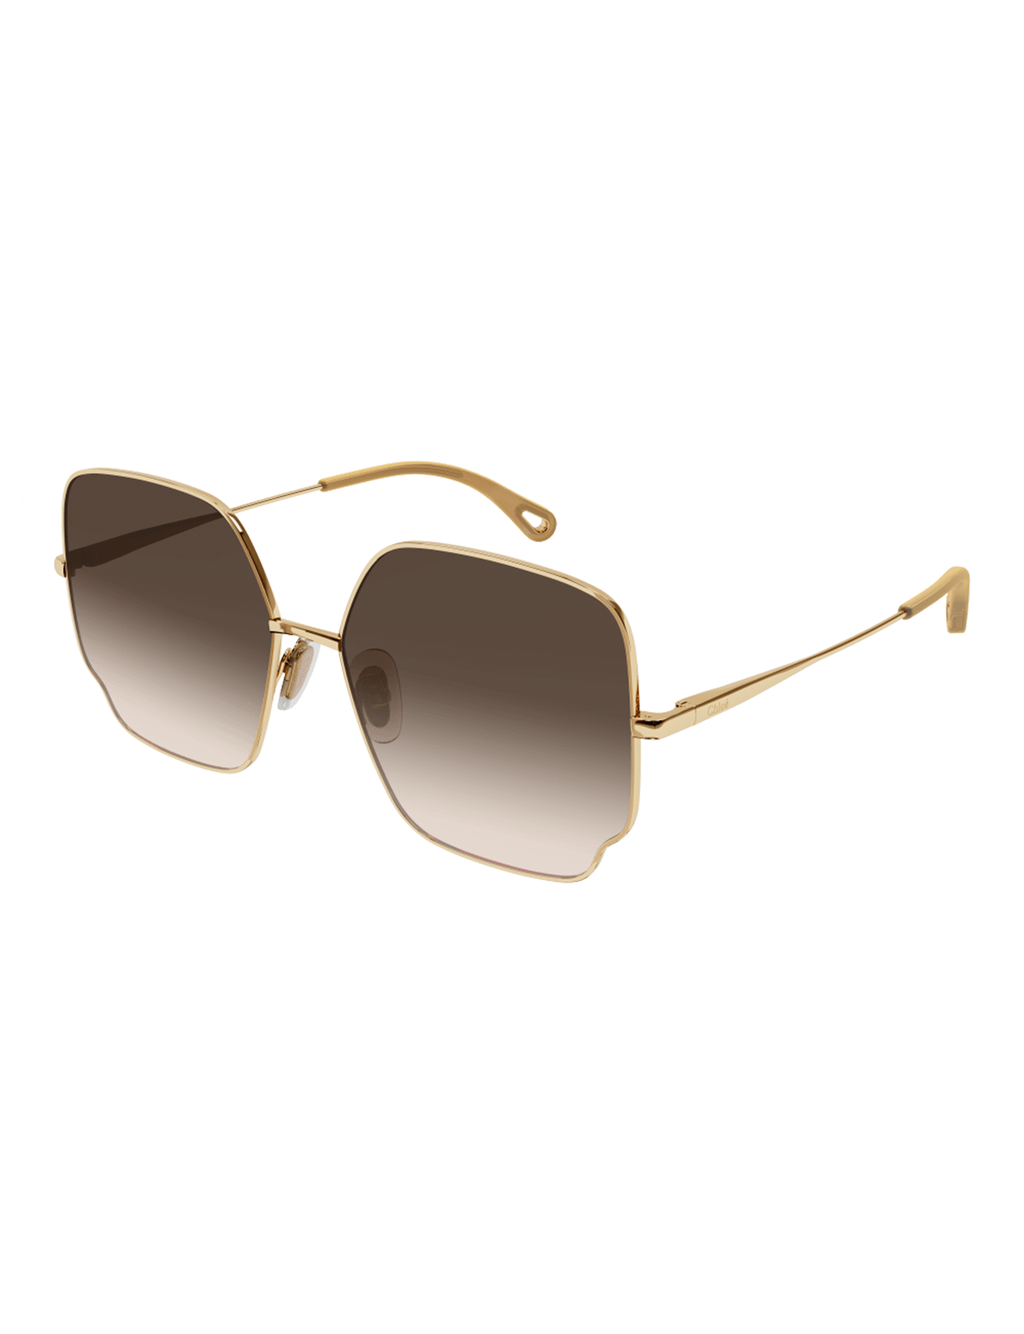 Square Scallop Sunglasses, Gold/Brown